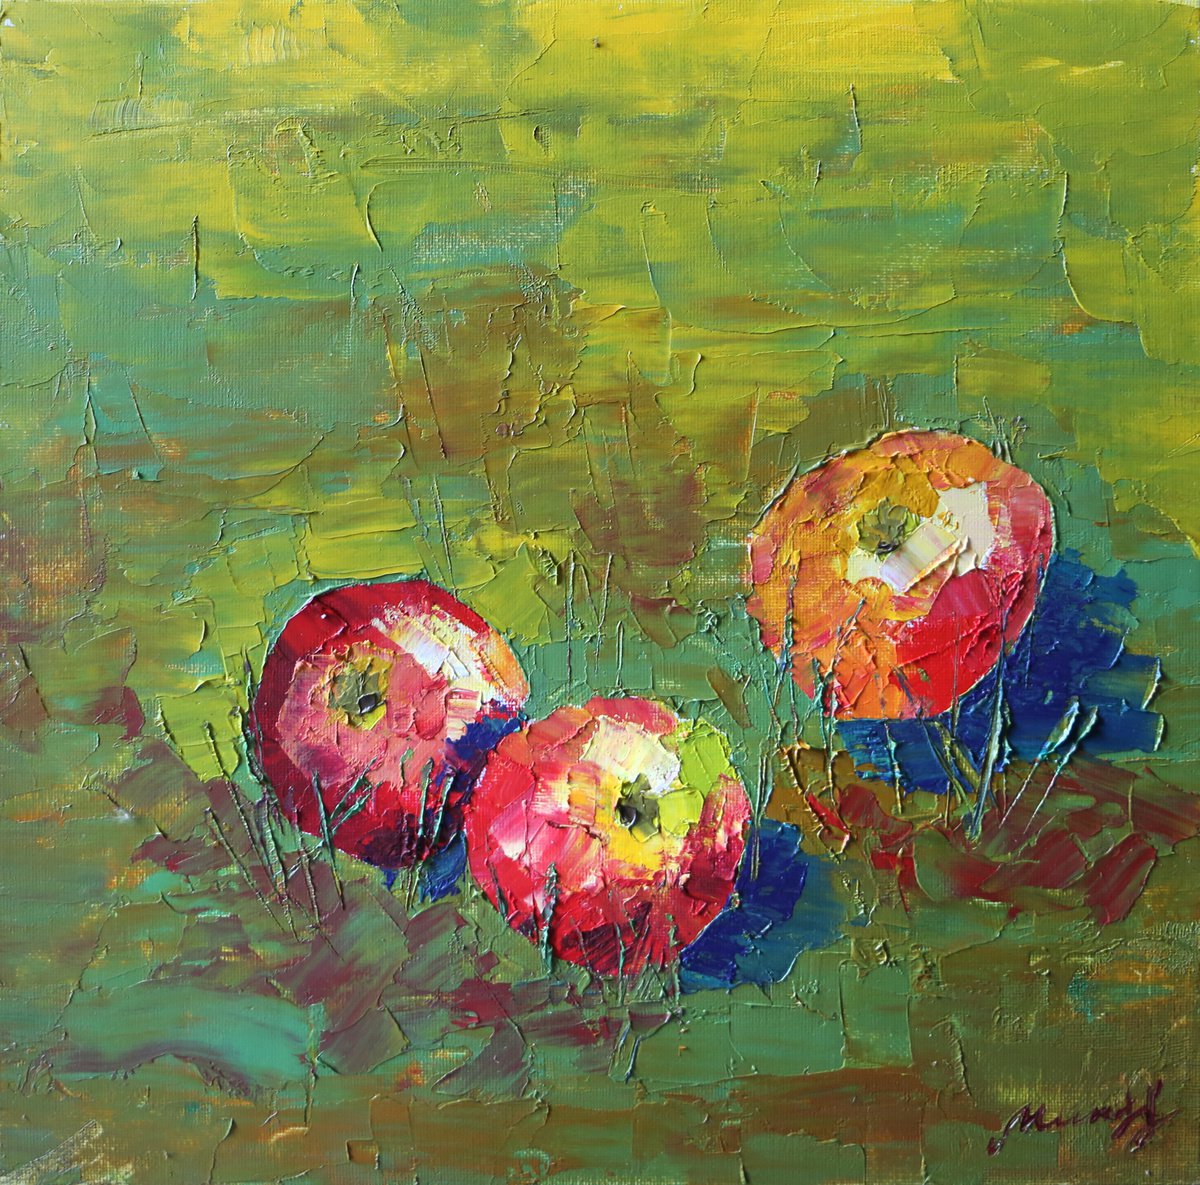 Apples on the Grass by Ekaterina Mitrofanova